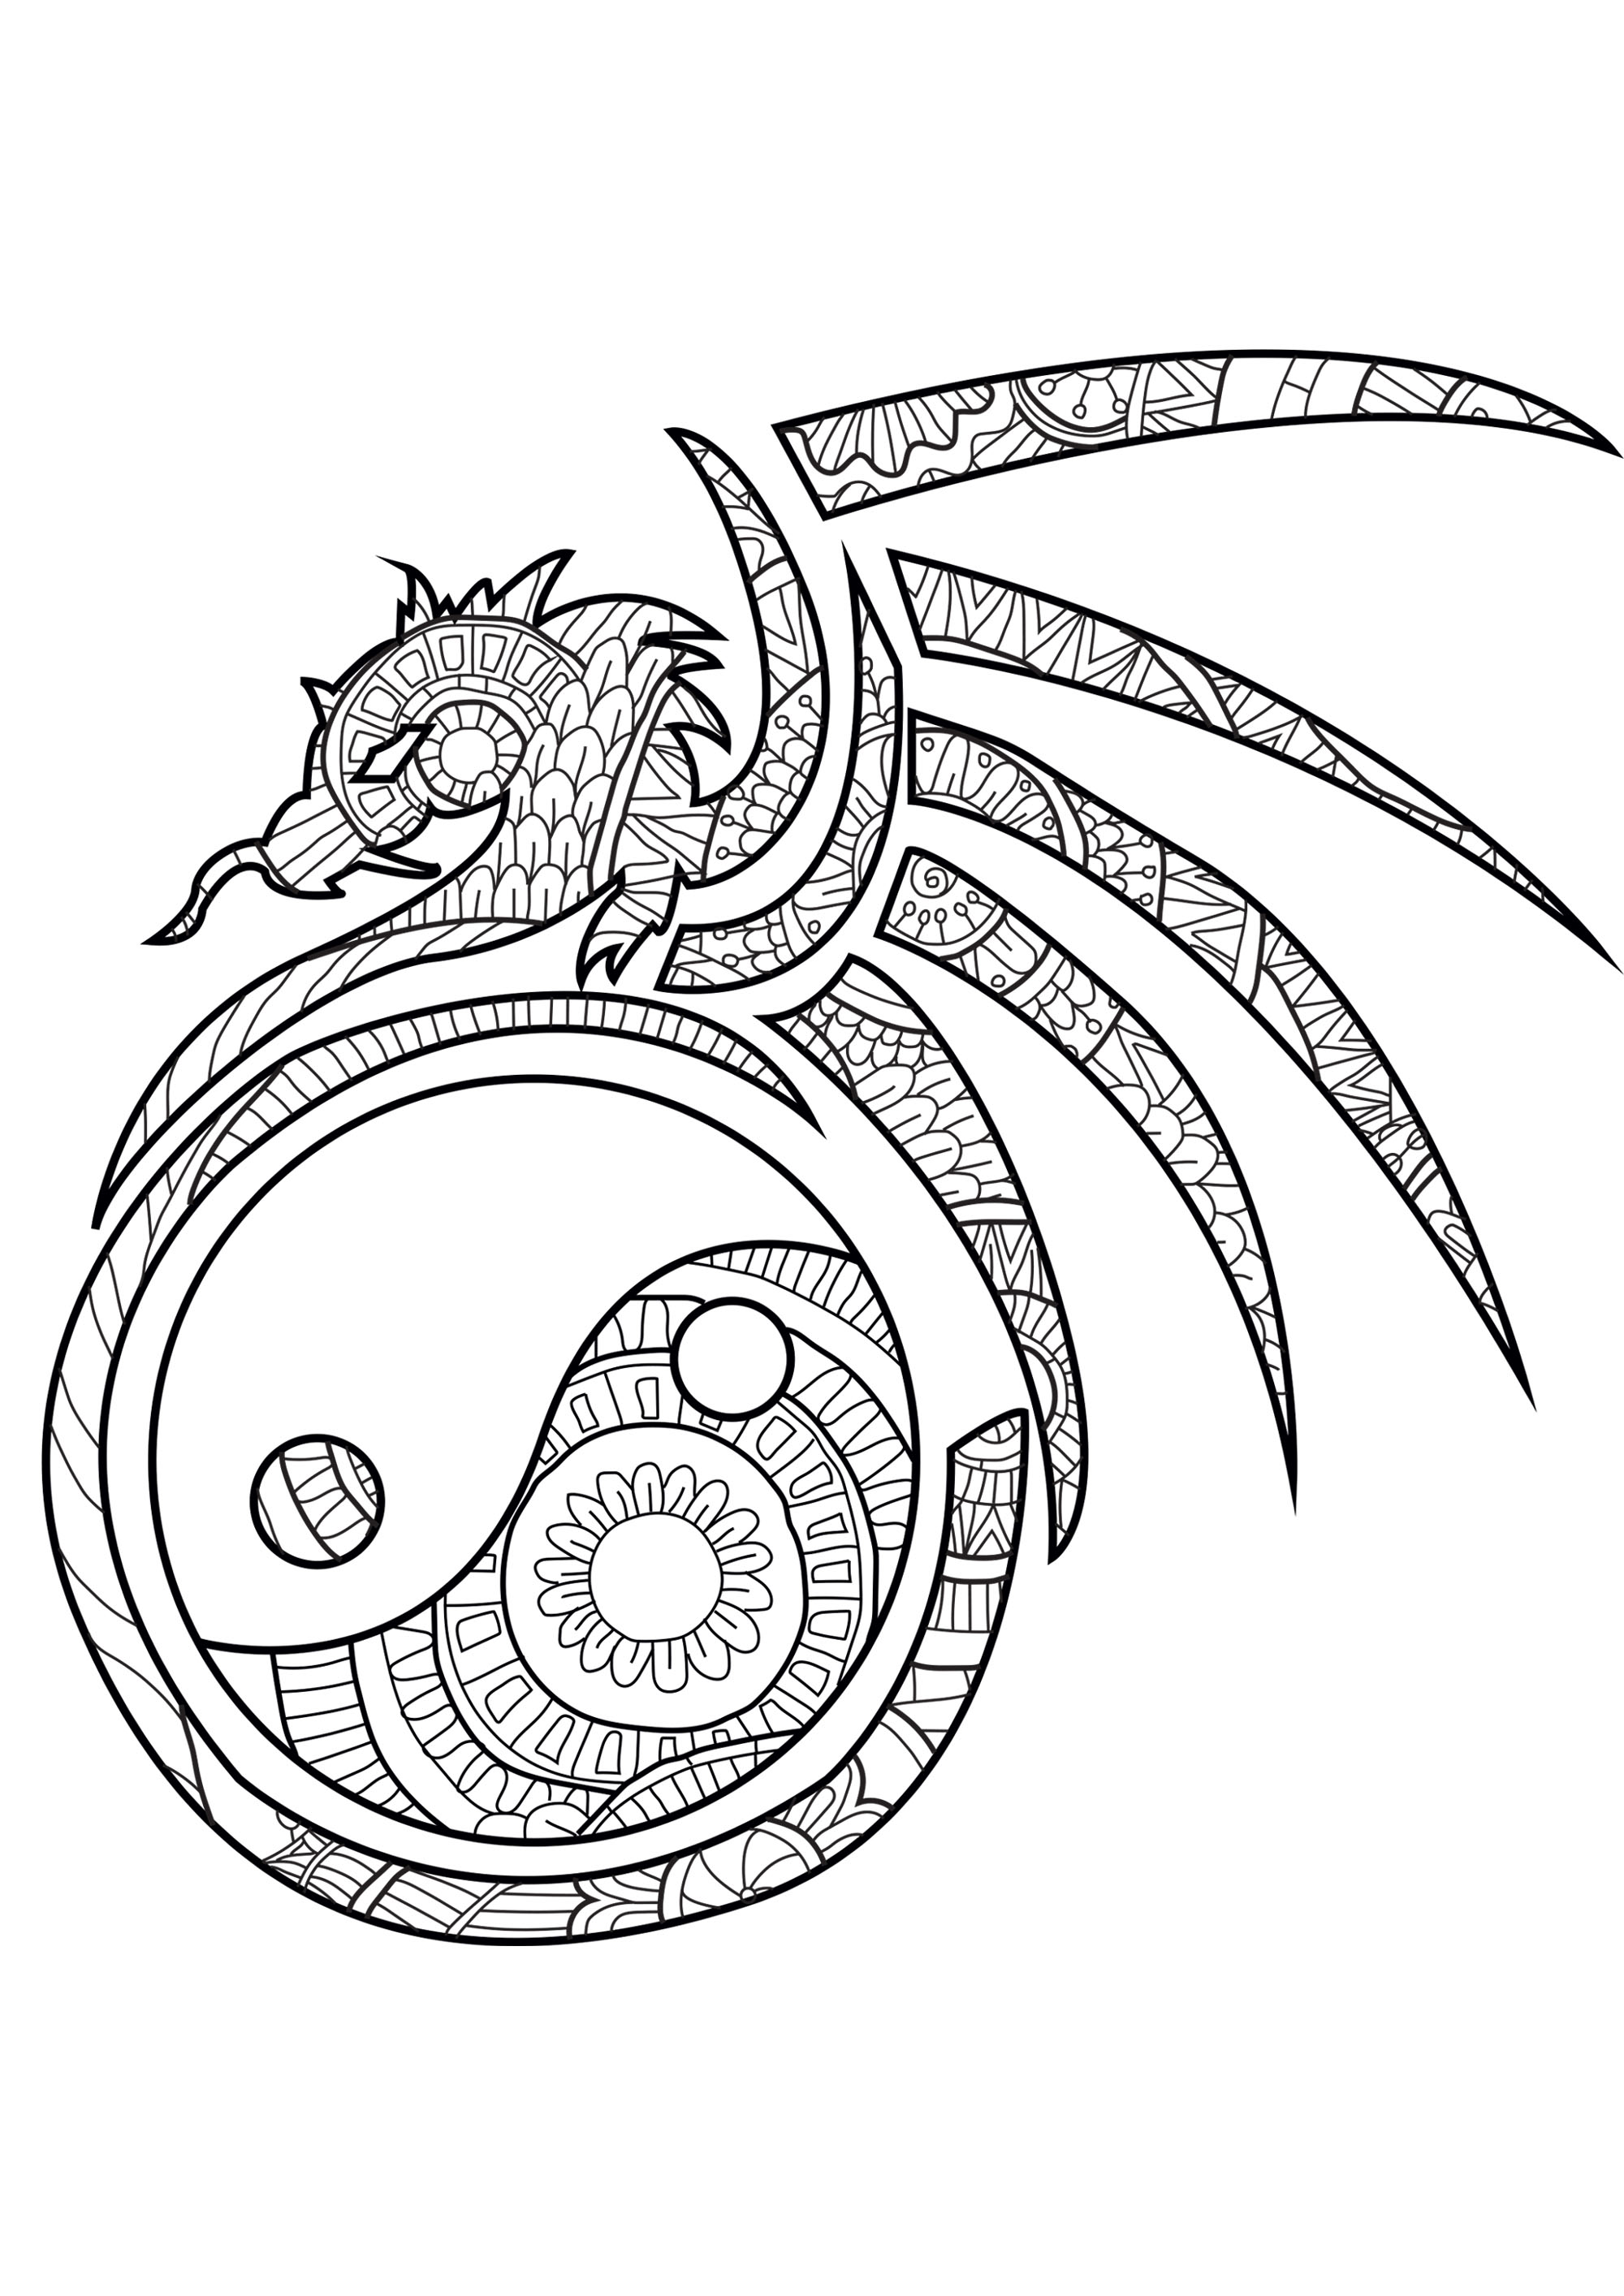 L'equilibrio tra Yin e Yang in un disegno con un drago pieno di motivi armoniosi, Artista : Caillou